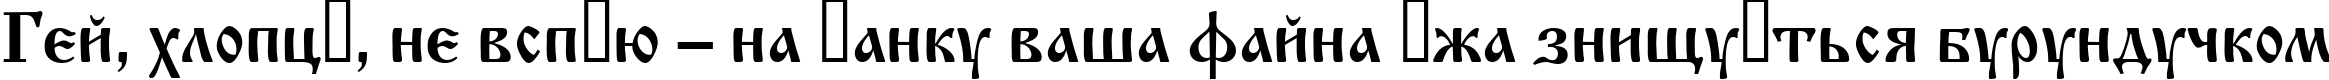 Пример написания шрифтом OldStyle текста на украинском